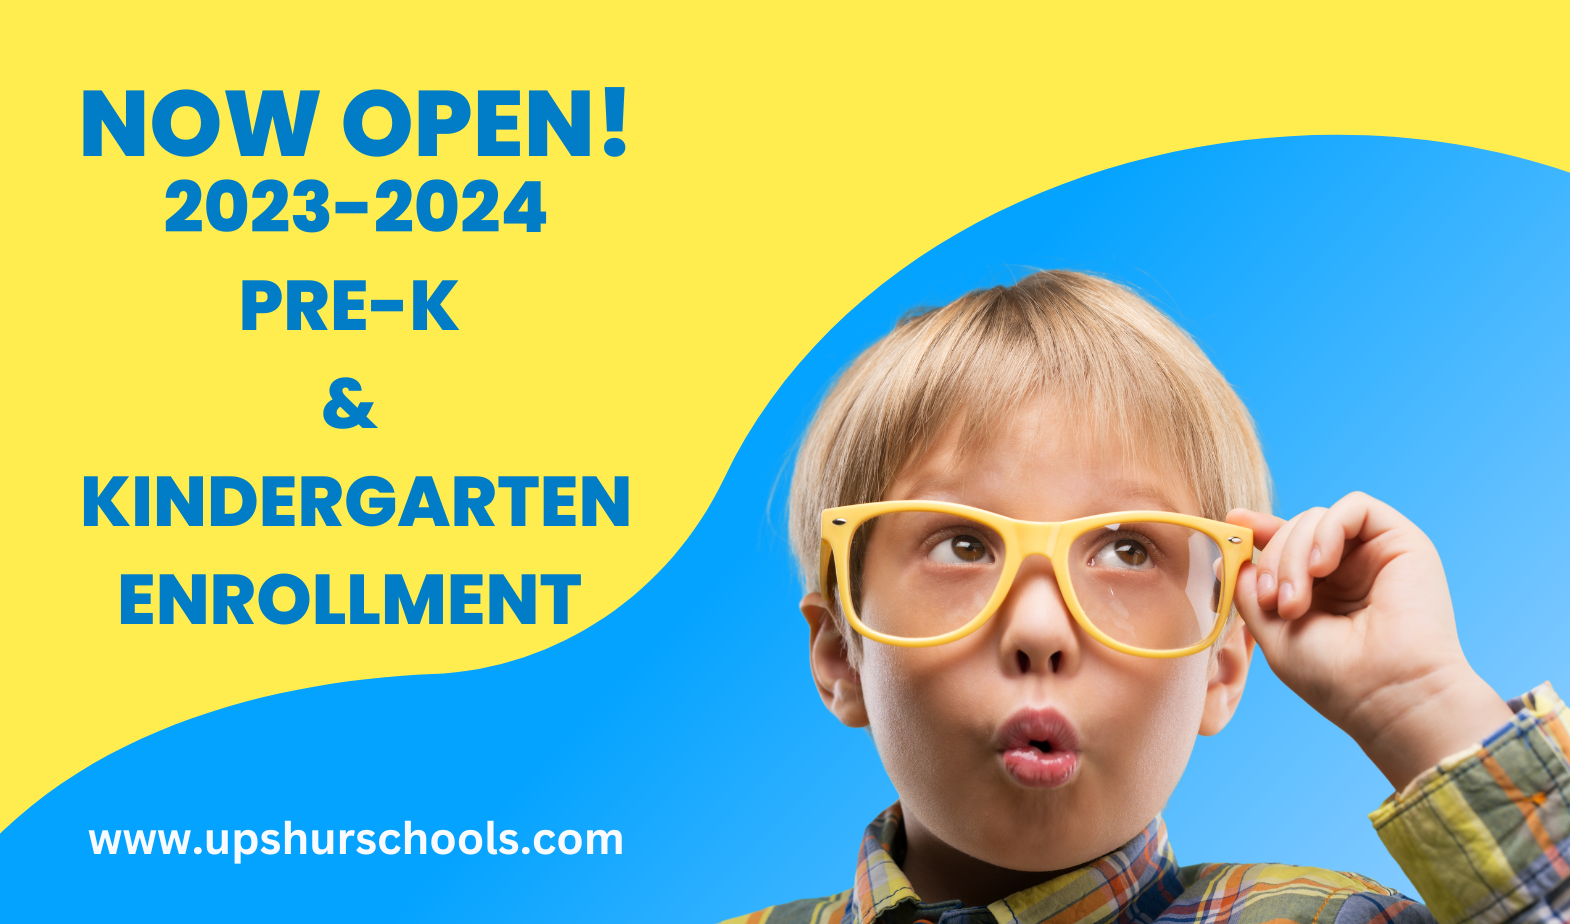 Now Open! 2023-2024 Pre-K  & Kindergarten Enrollment. www.upshurschools.com